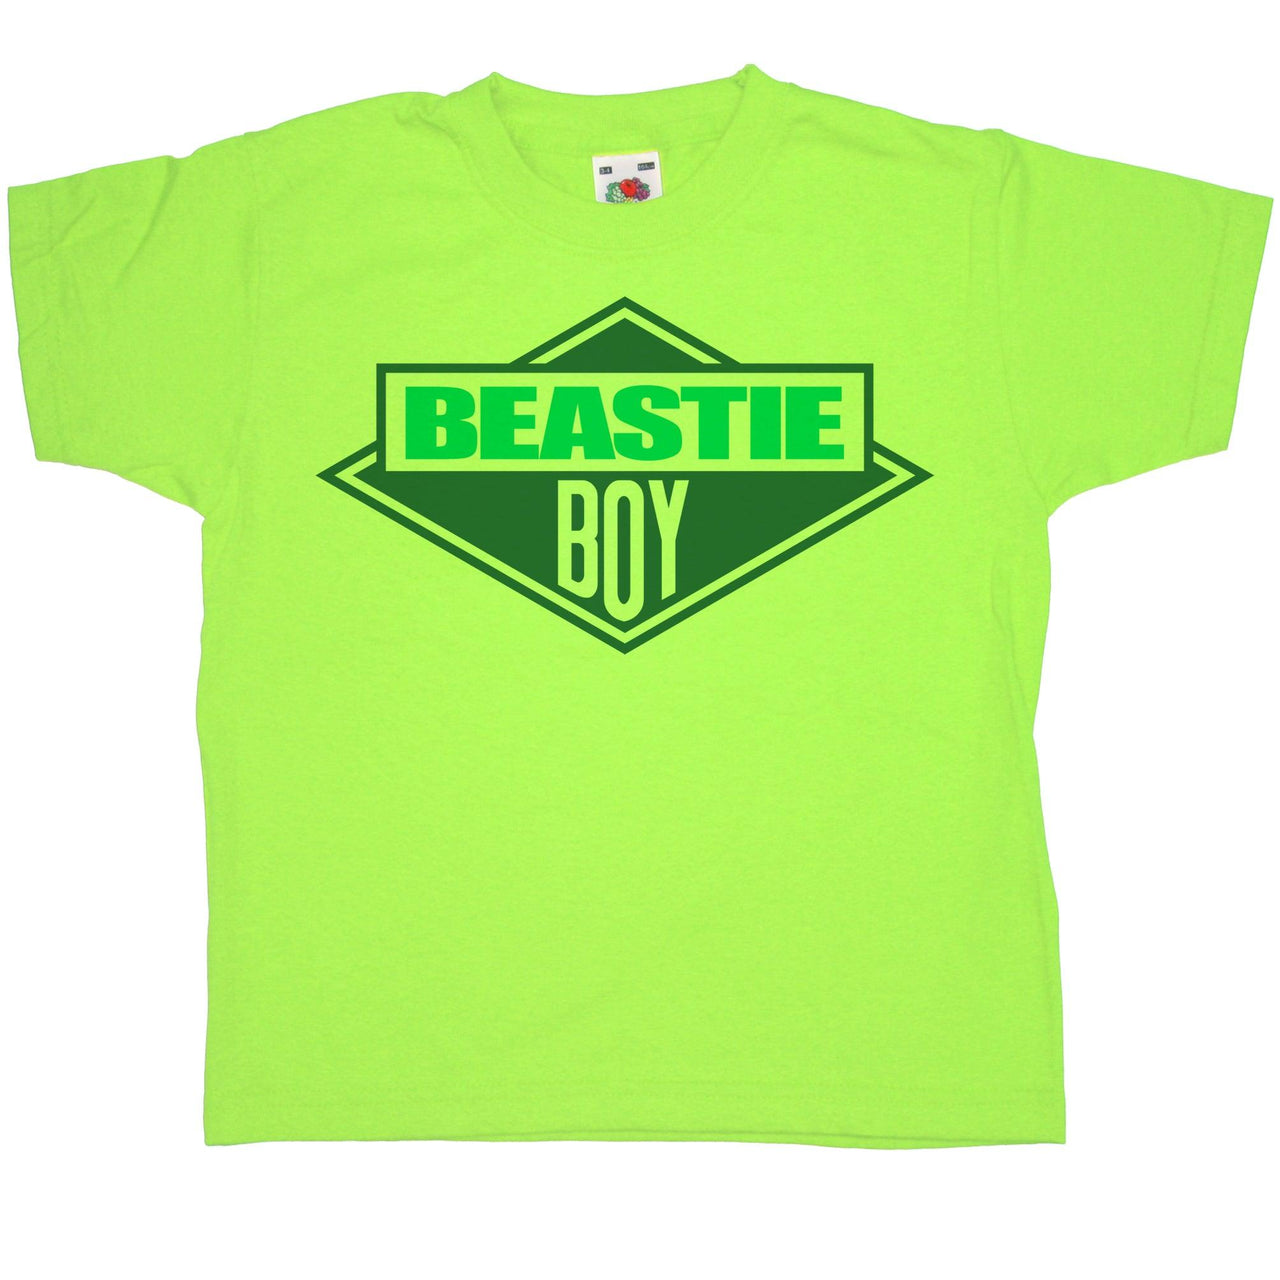 Beastie Boy Childrens T-Shirt 8Ball